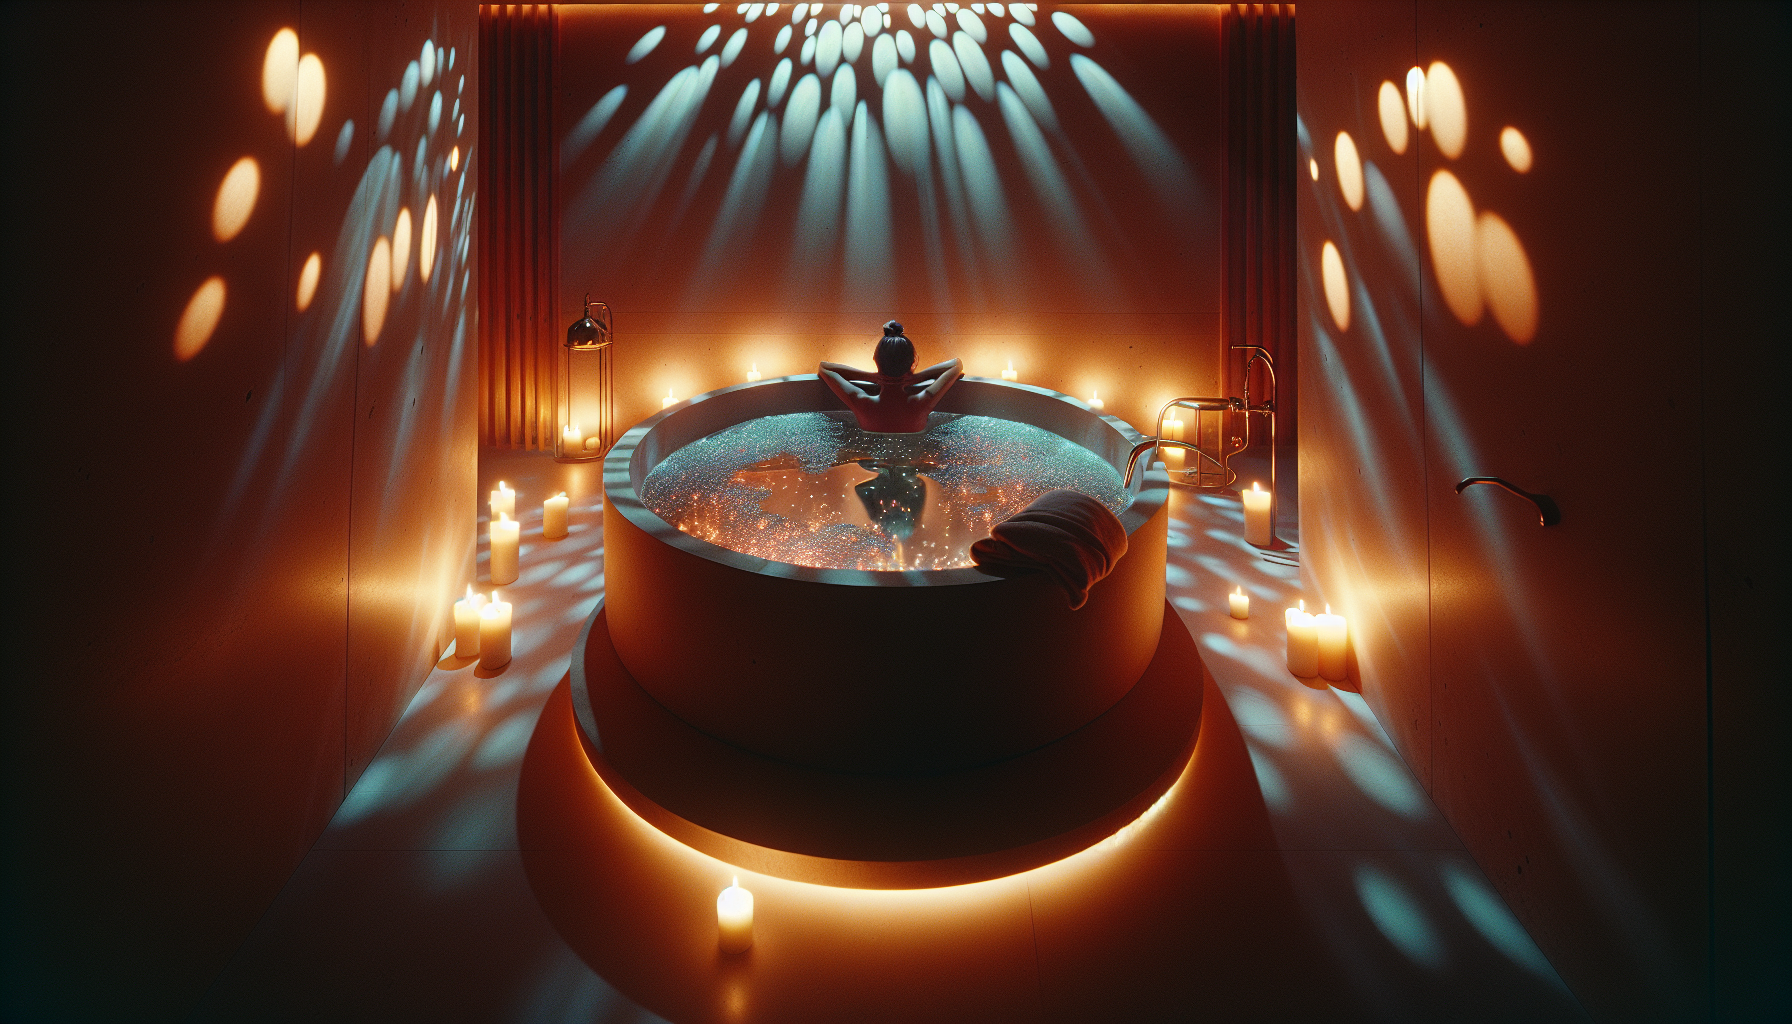 Entspannendes Bad in einer runden Badewanne